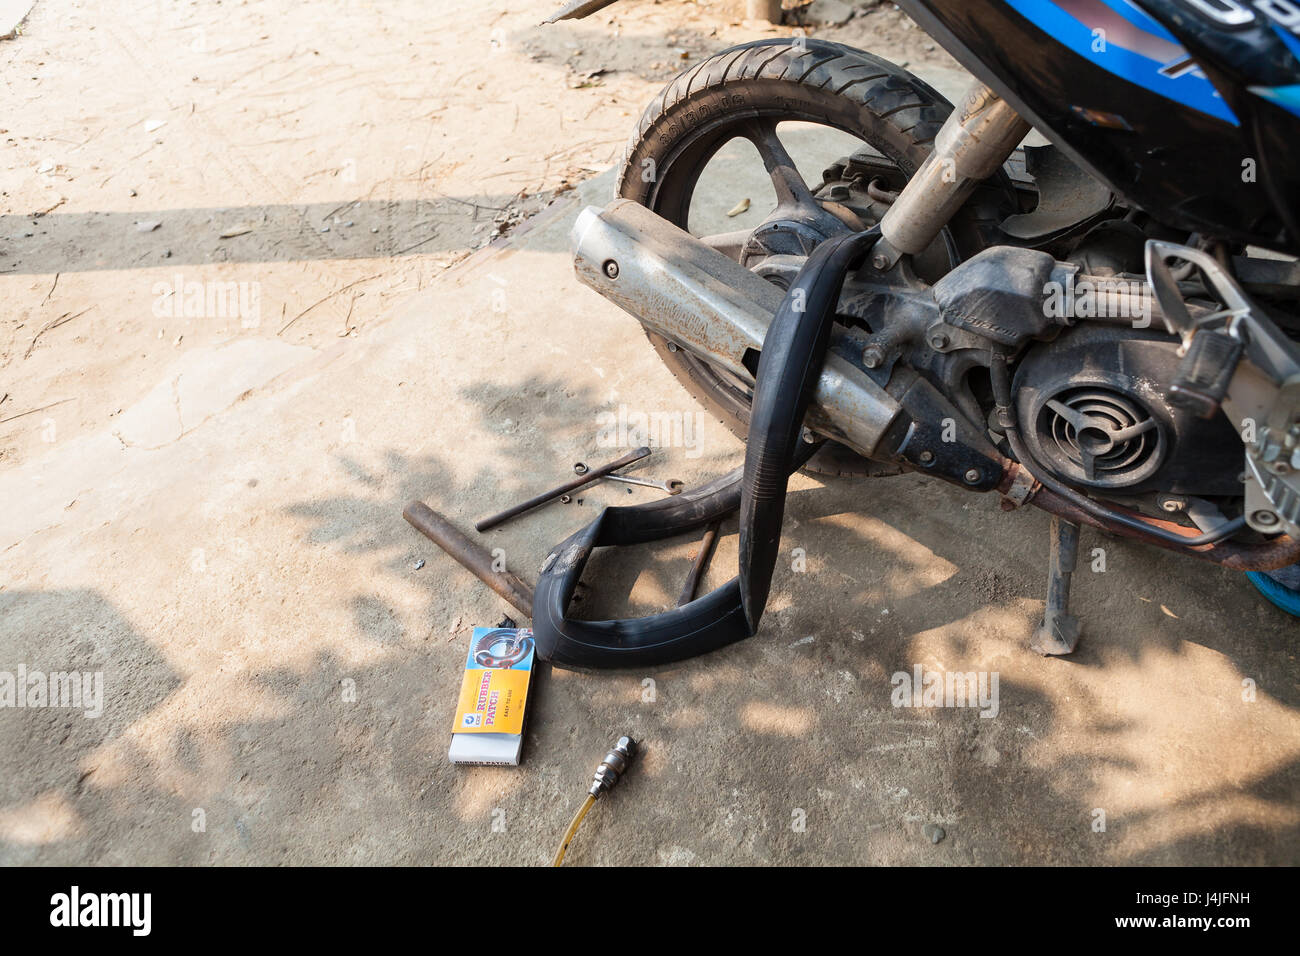 Hoi An, Vietnam - Mars 13, 2017 : réparation à l'innertube scooter local mécanicien, Vietnam Banque D'Images